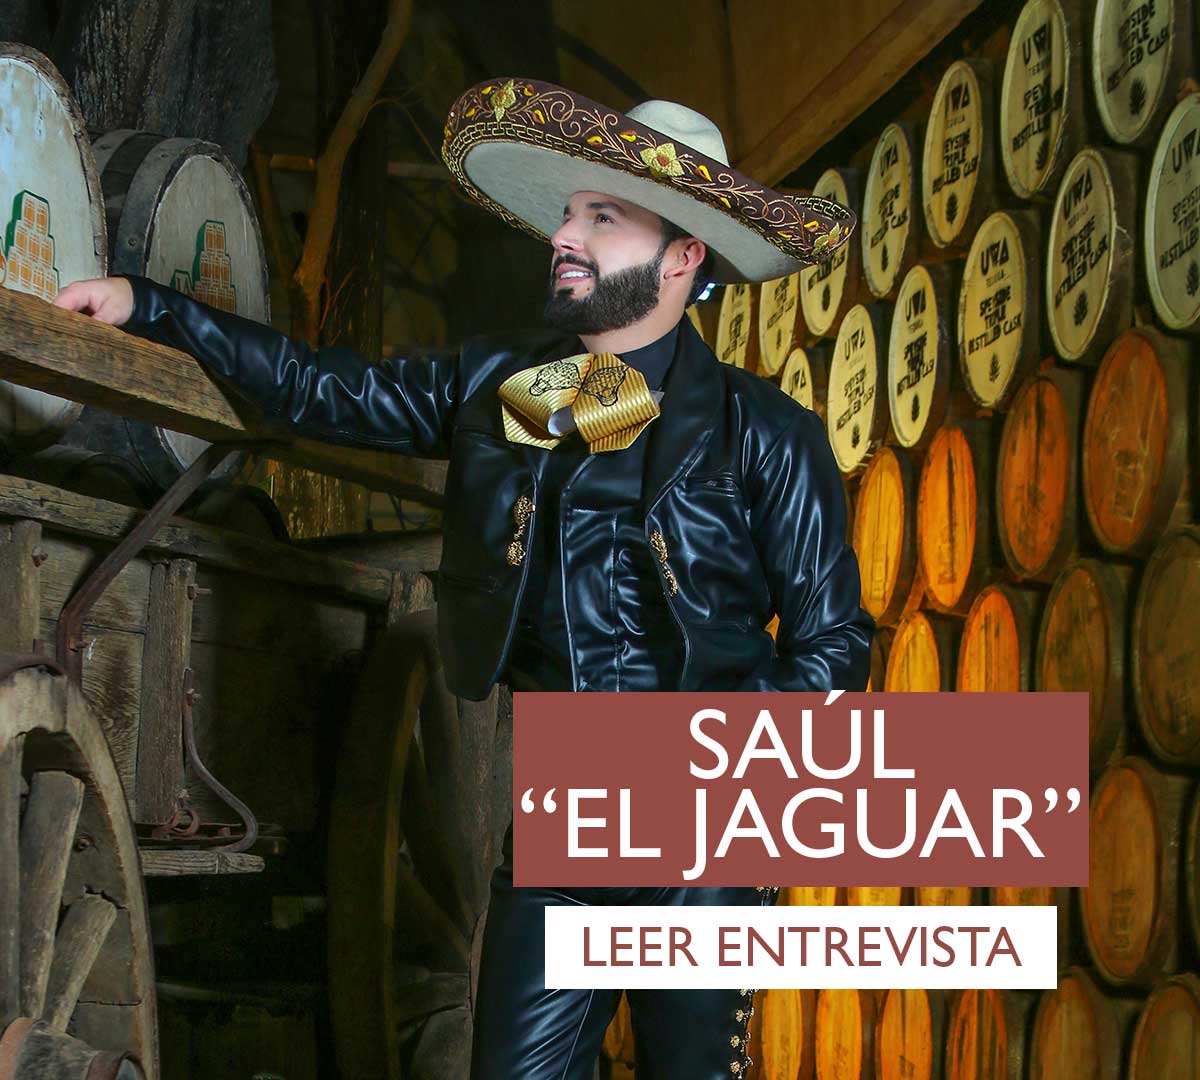 Saul Alarcón “El Jaguar”